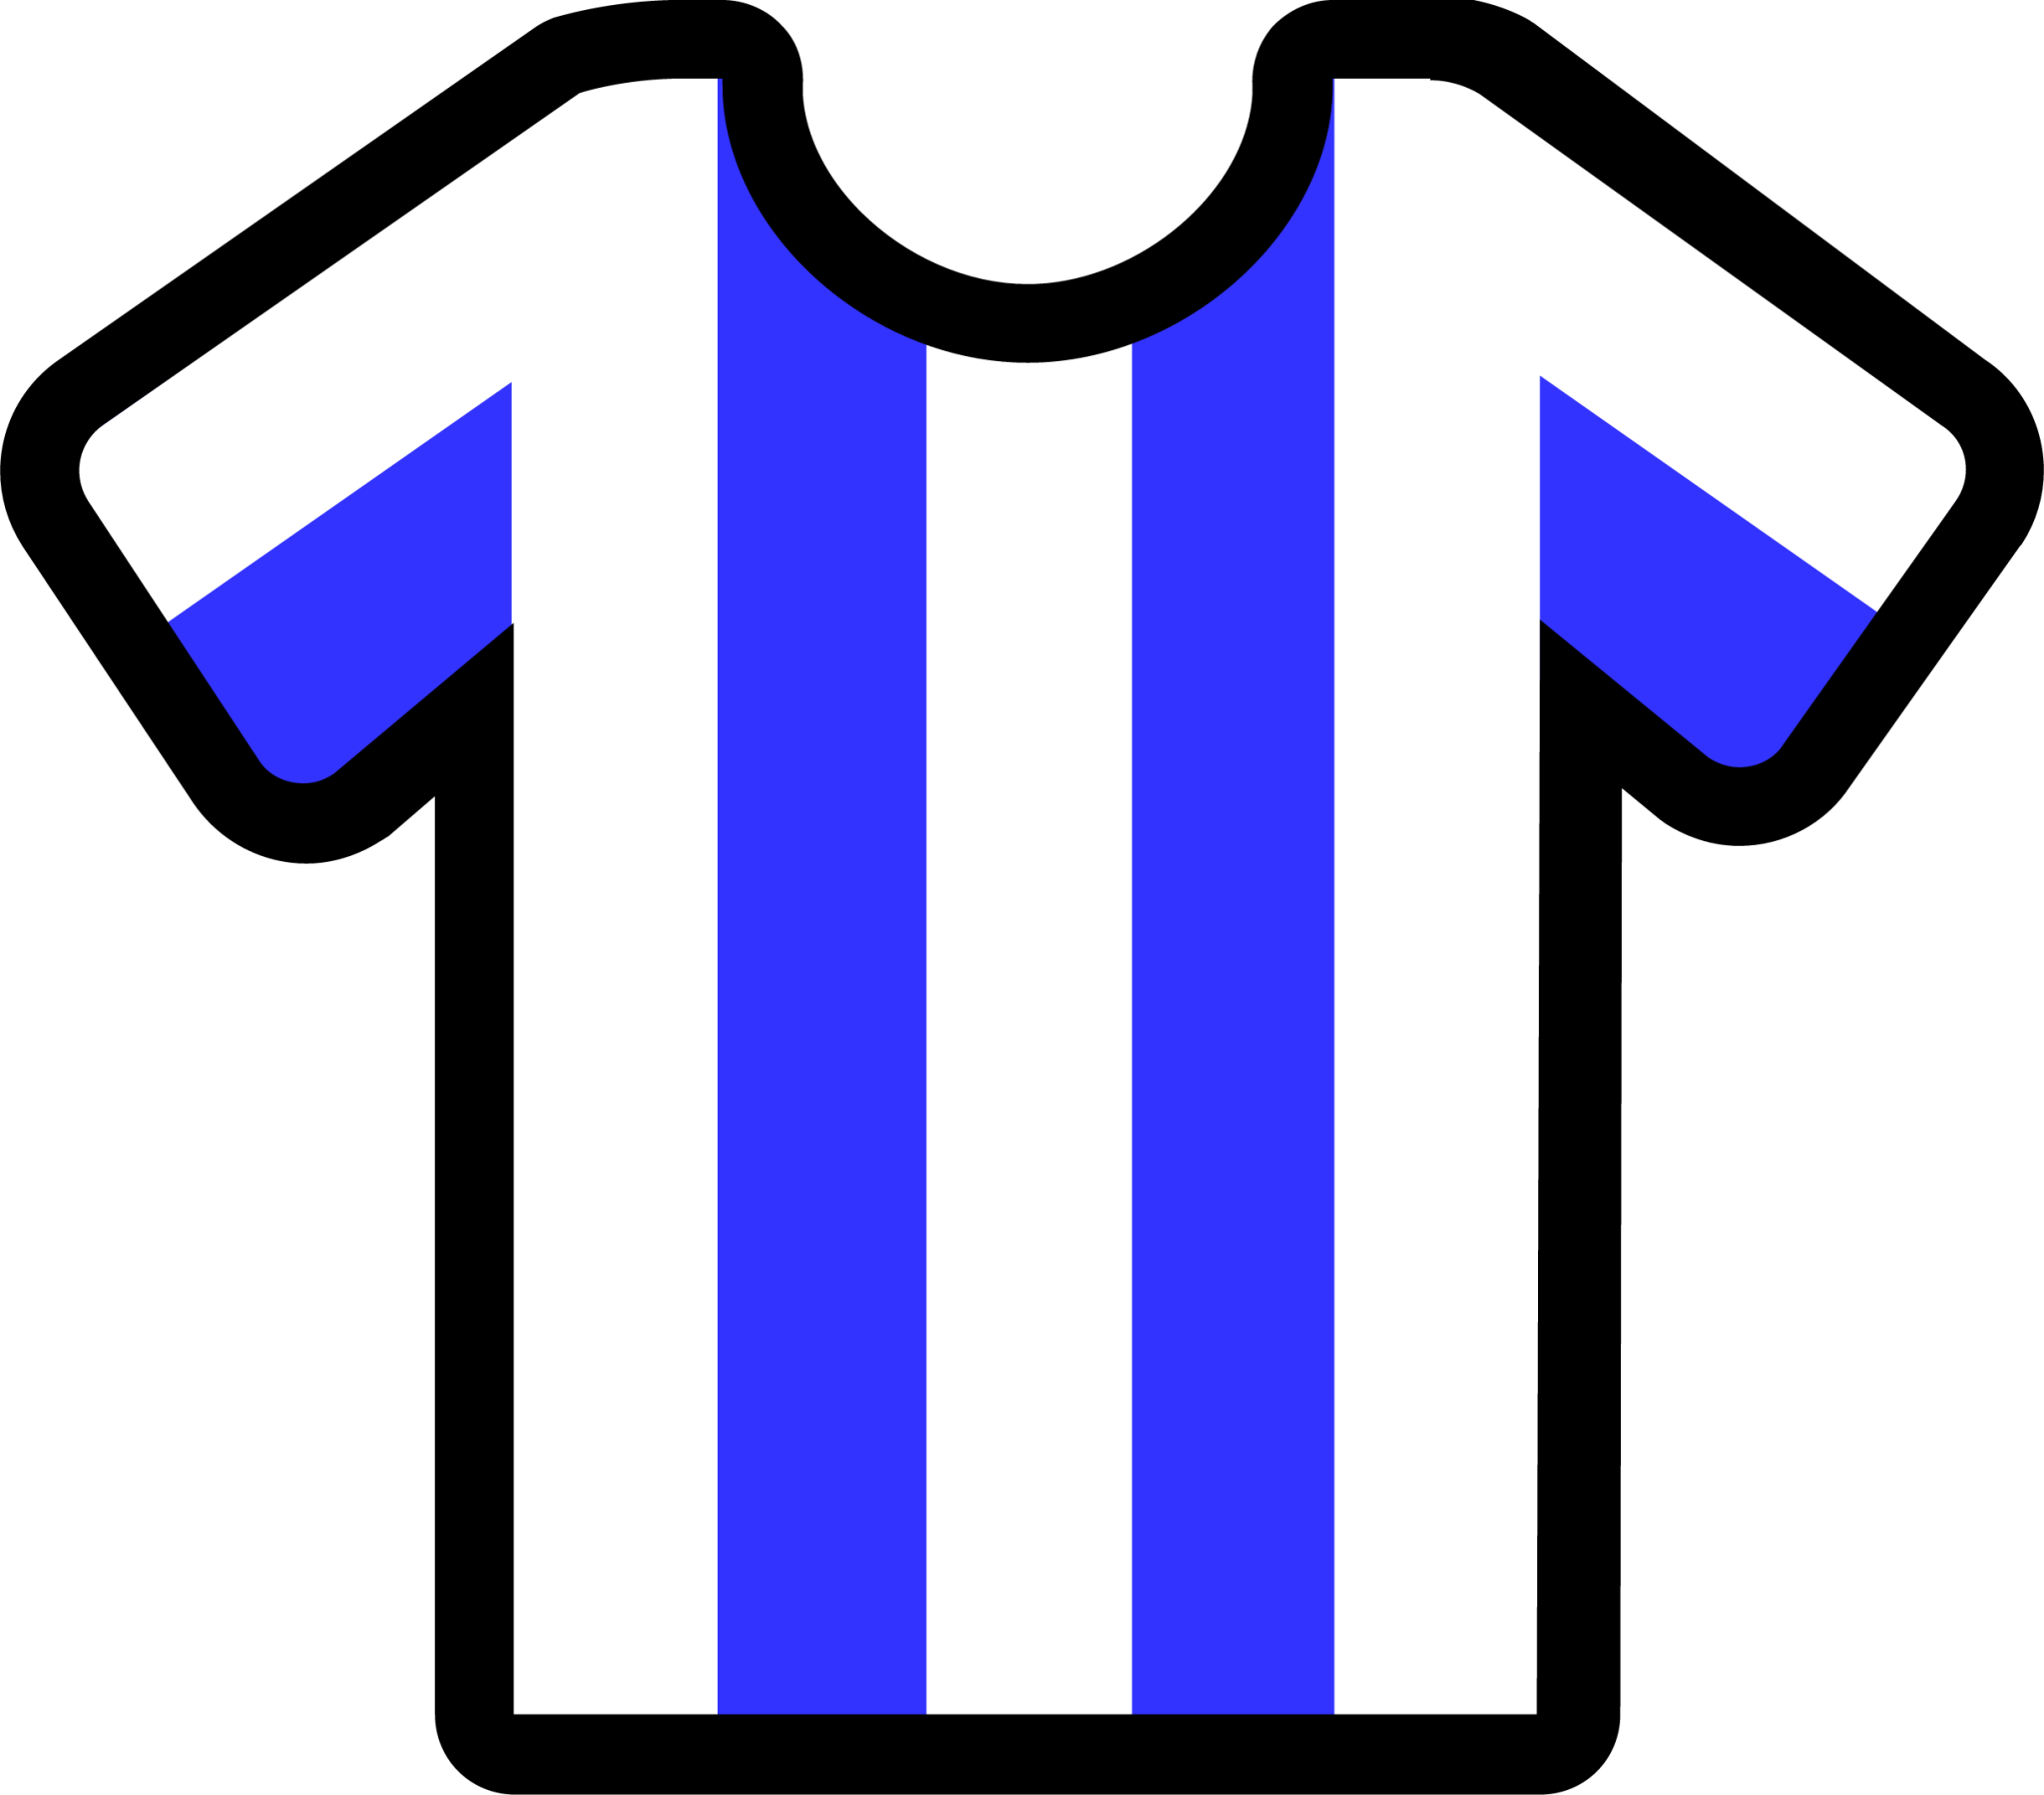 stripes white blue icon